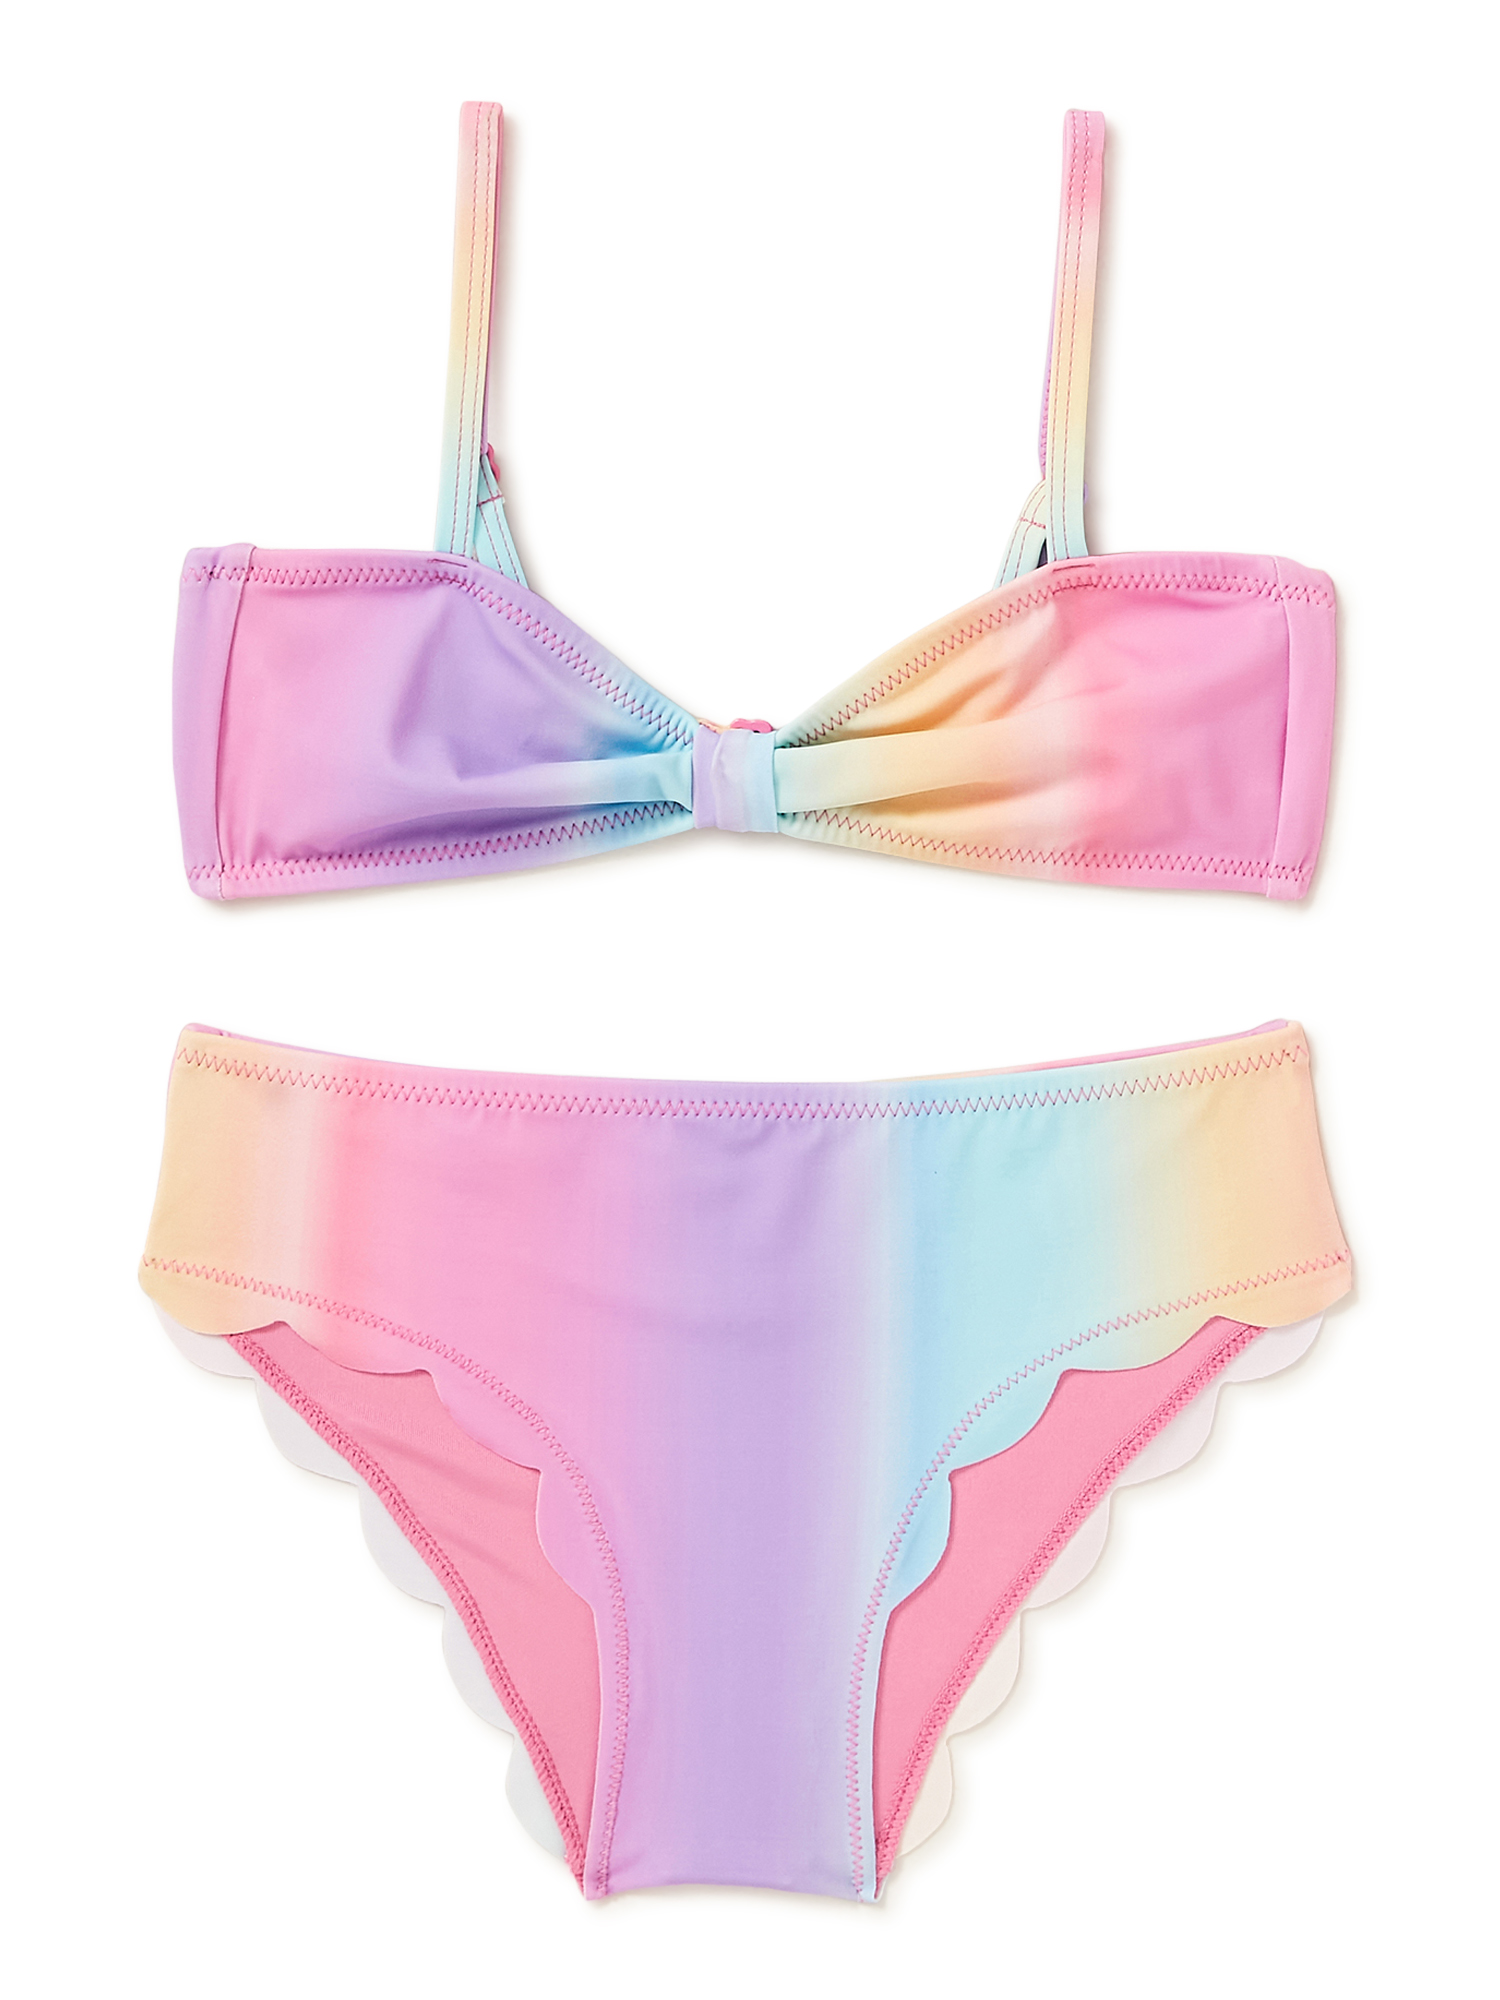 THEME by Ariella Girls Sunset Ombre Scalloped 2 Piece Bikini Swimsuit, Sizes 7-16 - image 1 of 5